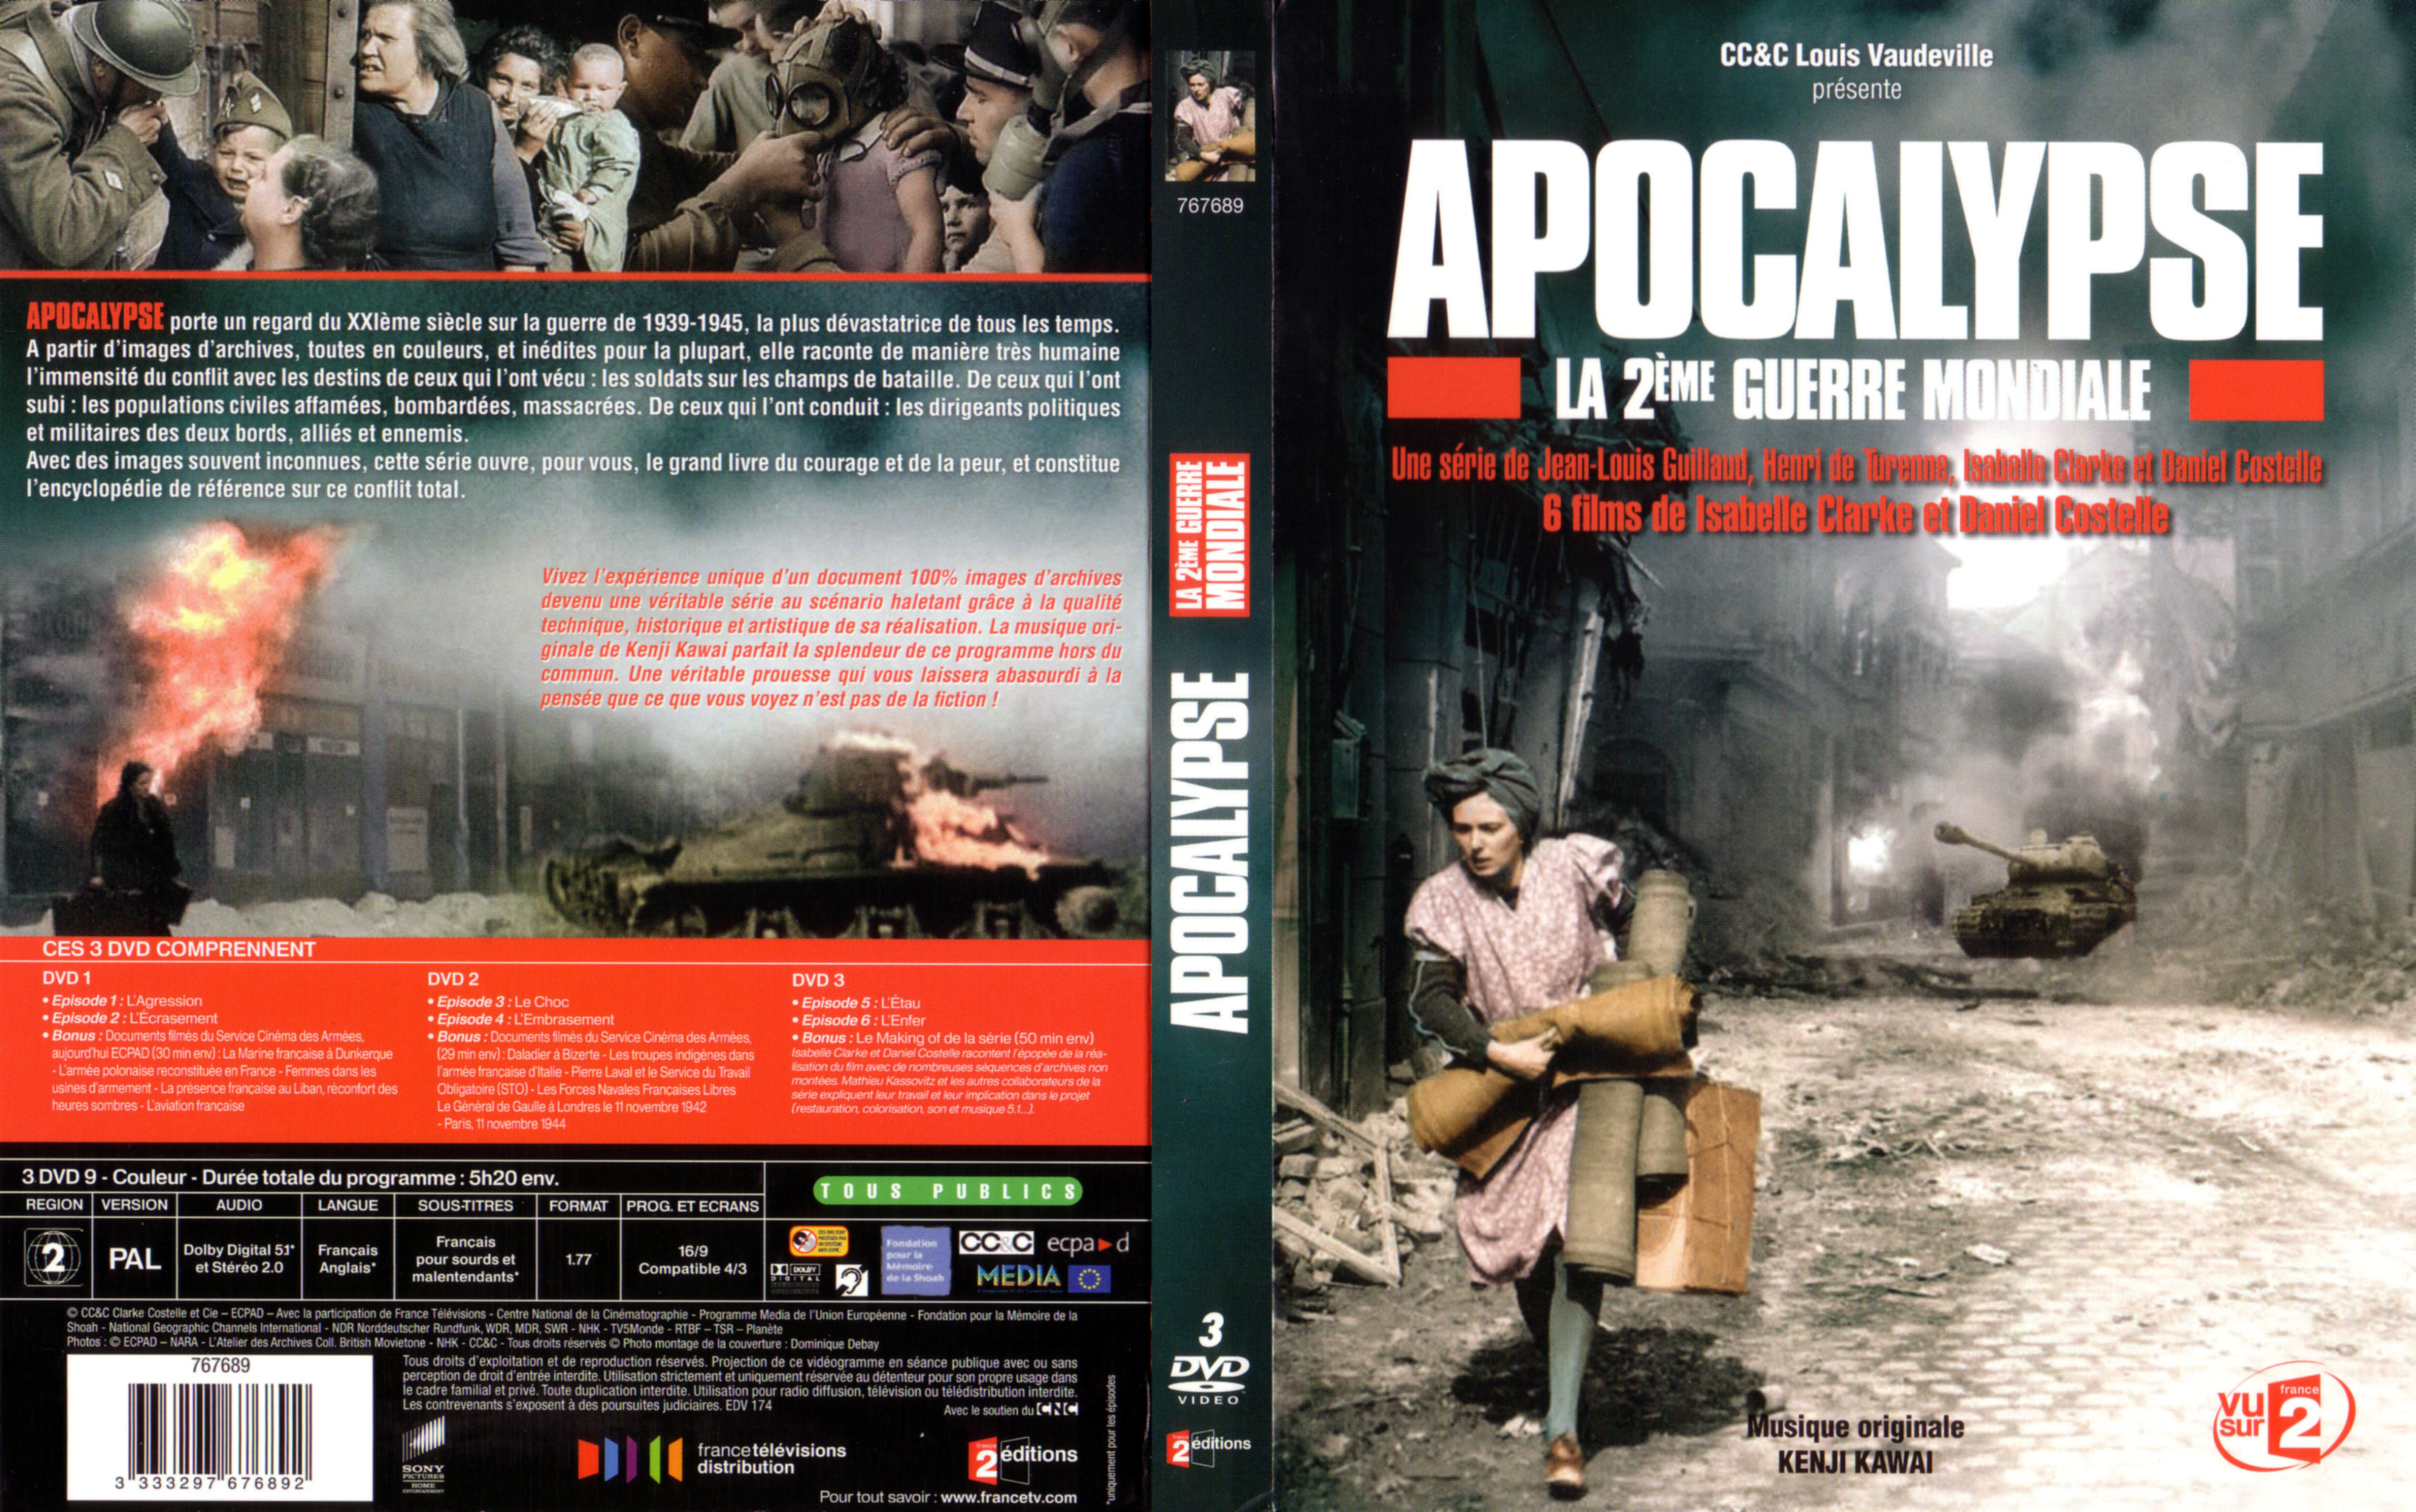 Jaquette DVD Apocalypse La 2me Guerre Mondiale